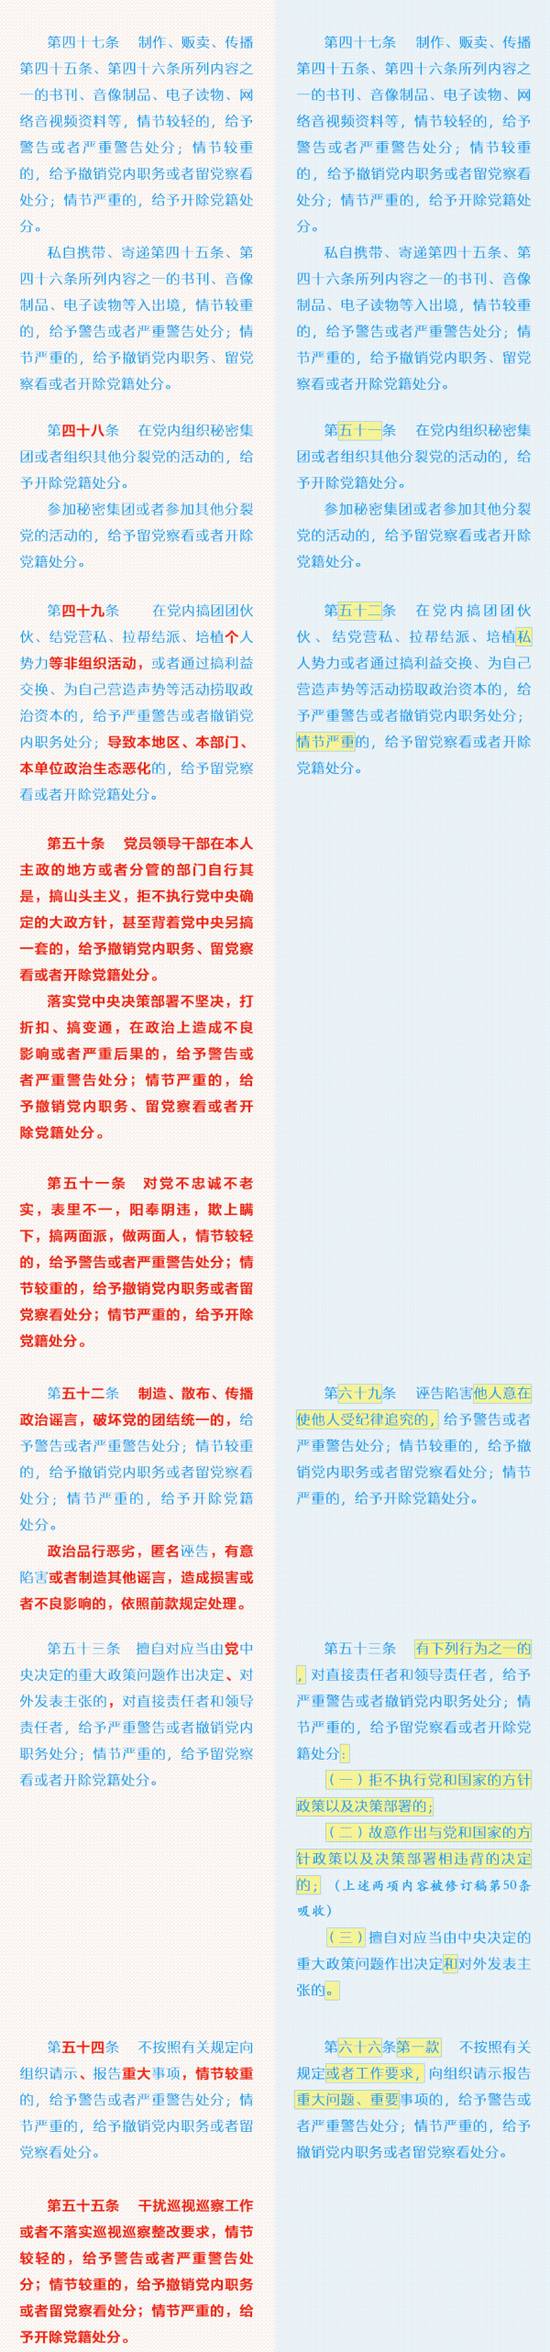 《中国共产党纪律处分条例》修订前后对照表